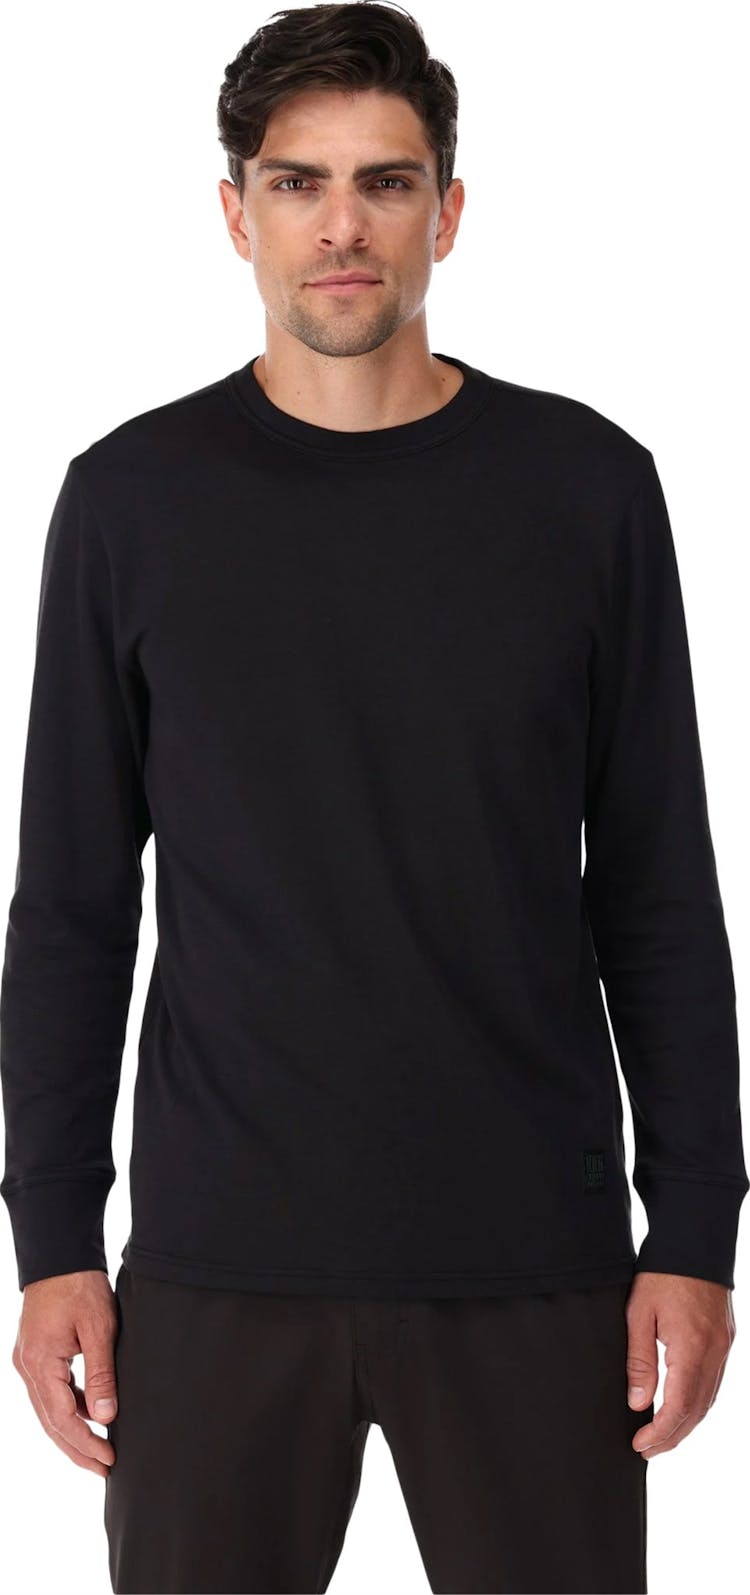 Numéro de l'image de la galerie de produits 4 pour le produit T-shirt en tricot à manches longues Tech - Homme